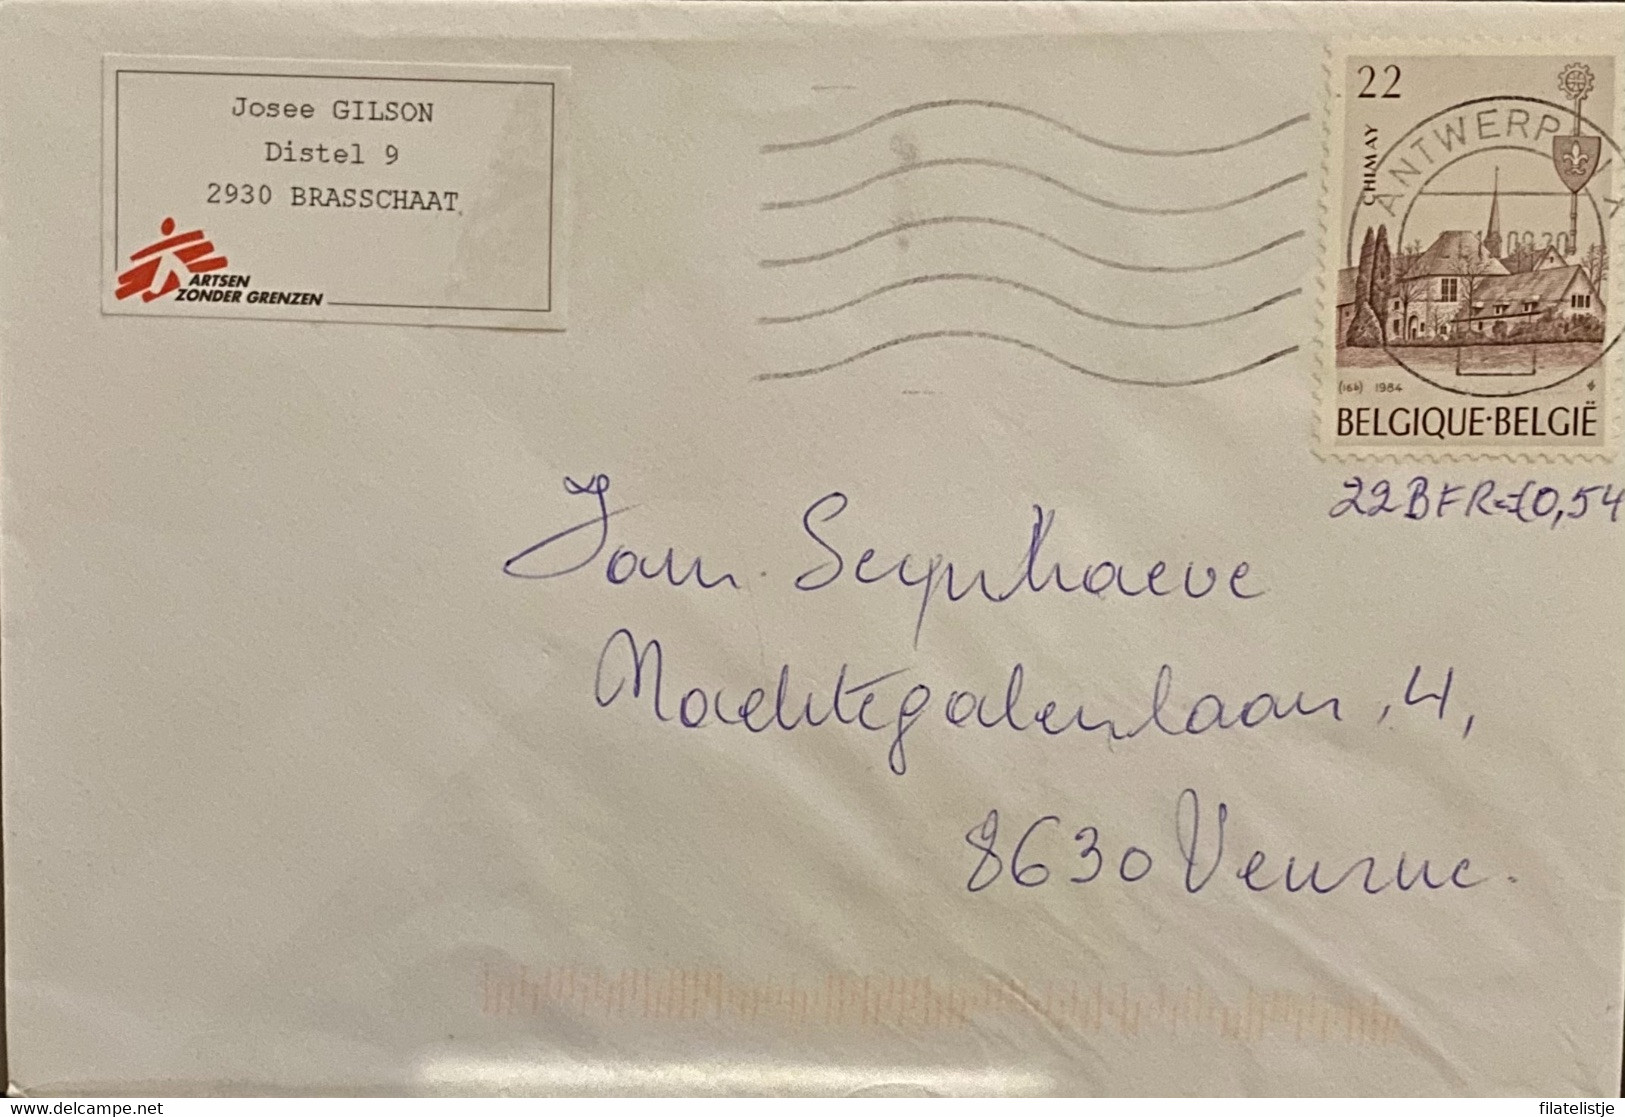 Omslag Uit België Met Zegel Nrs 2147 Used - Enveloppes